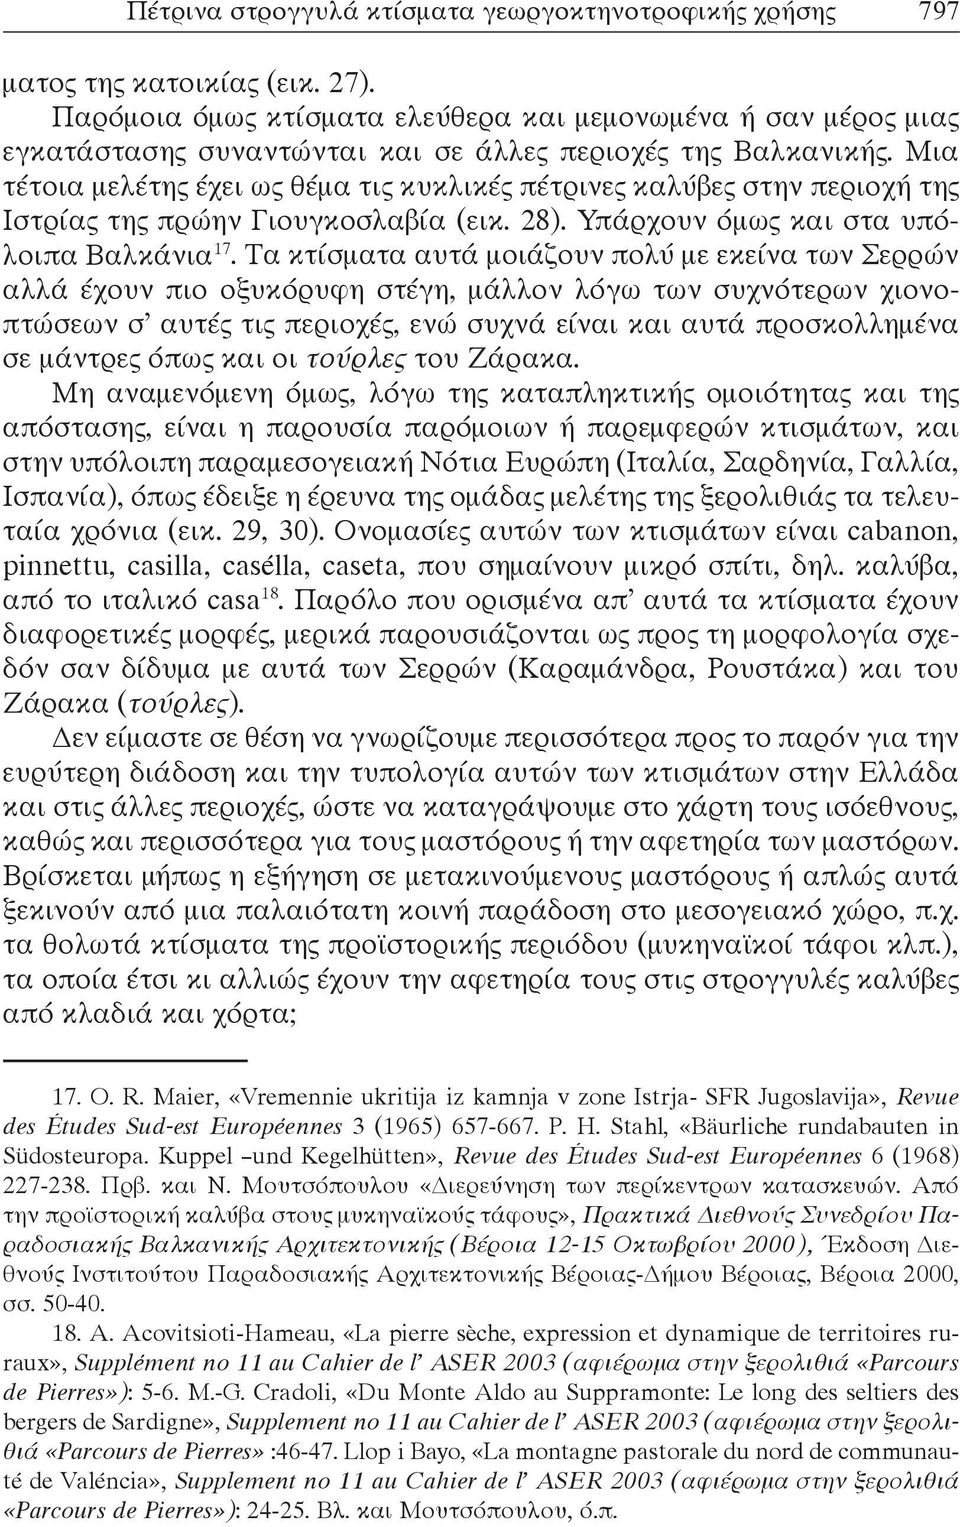 Μια τέτοια μελέτης έχει ως θέμα τις κυκλικές πέτρινες καλύβες στην περιοχή της Ιστρίας της πρώην Γιουγκοσλαβία (εικ. 28). Υπάρχουν όμως και στα υπόλοιπα Βαλκάνια 17.